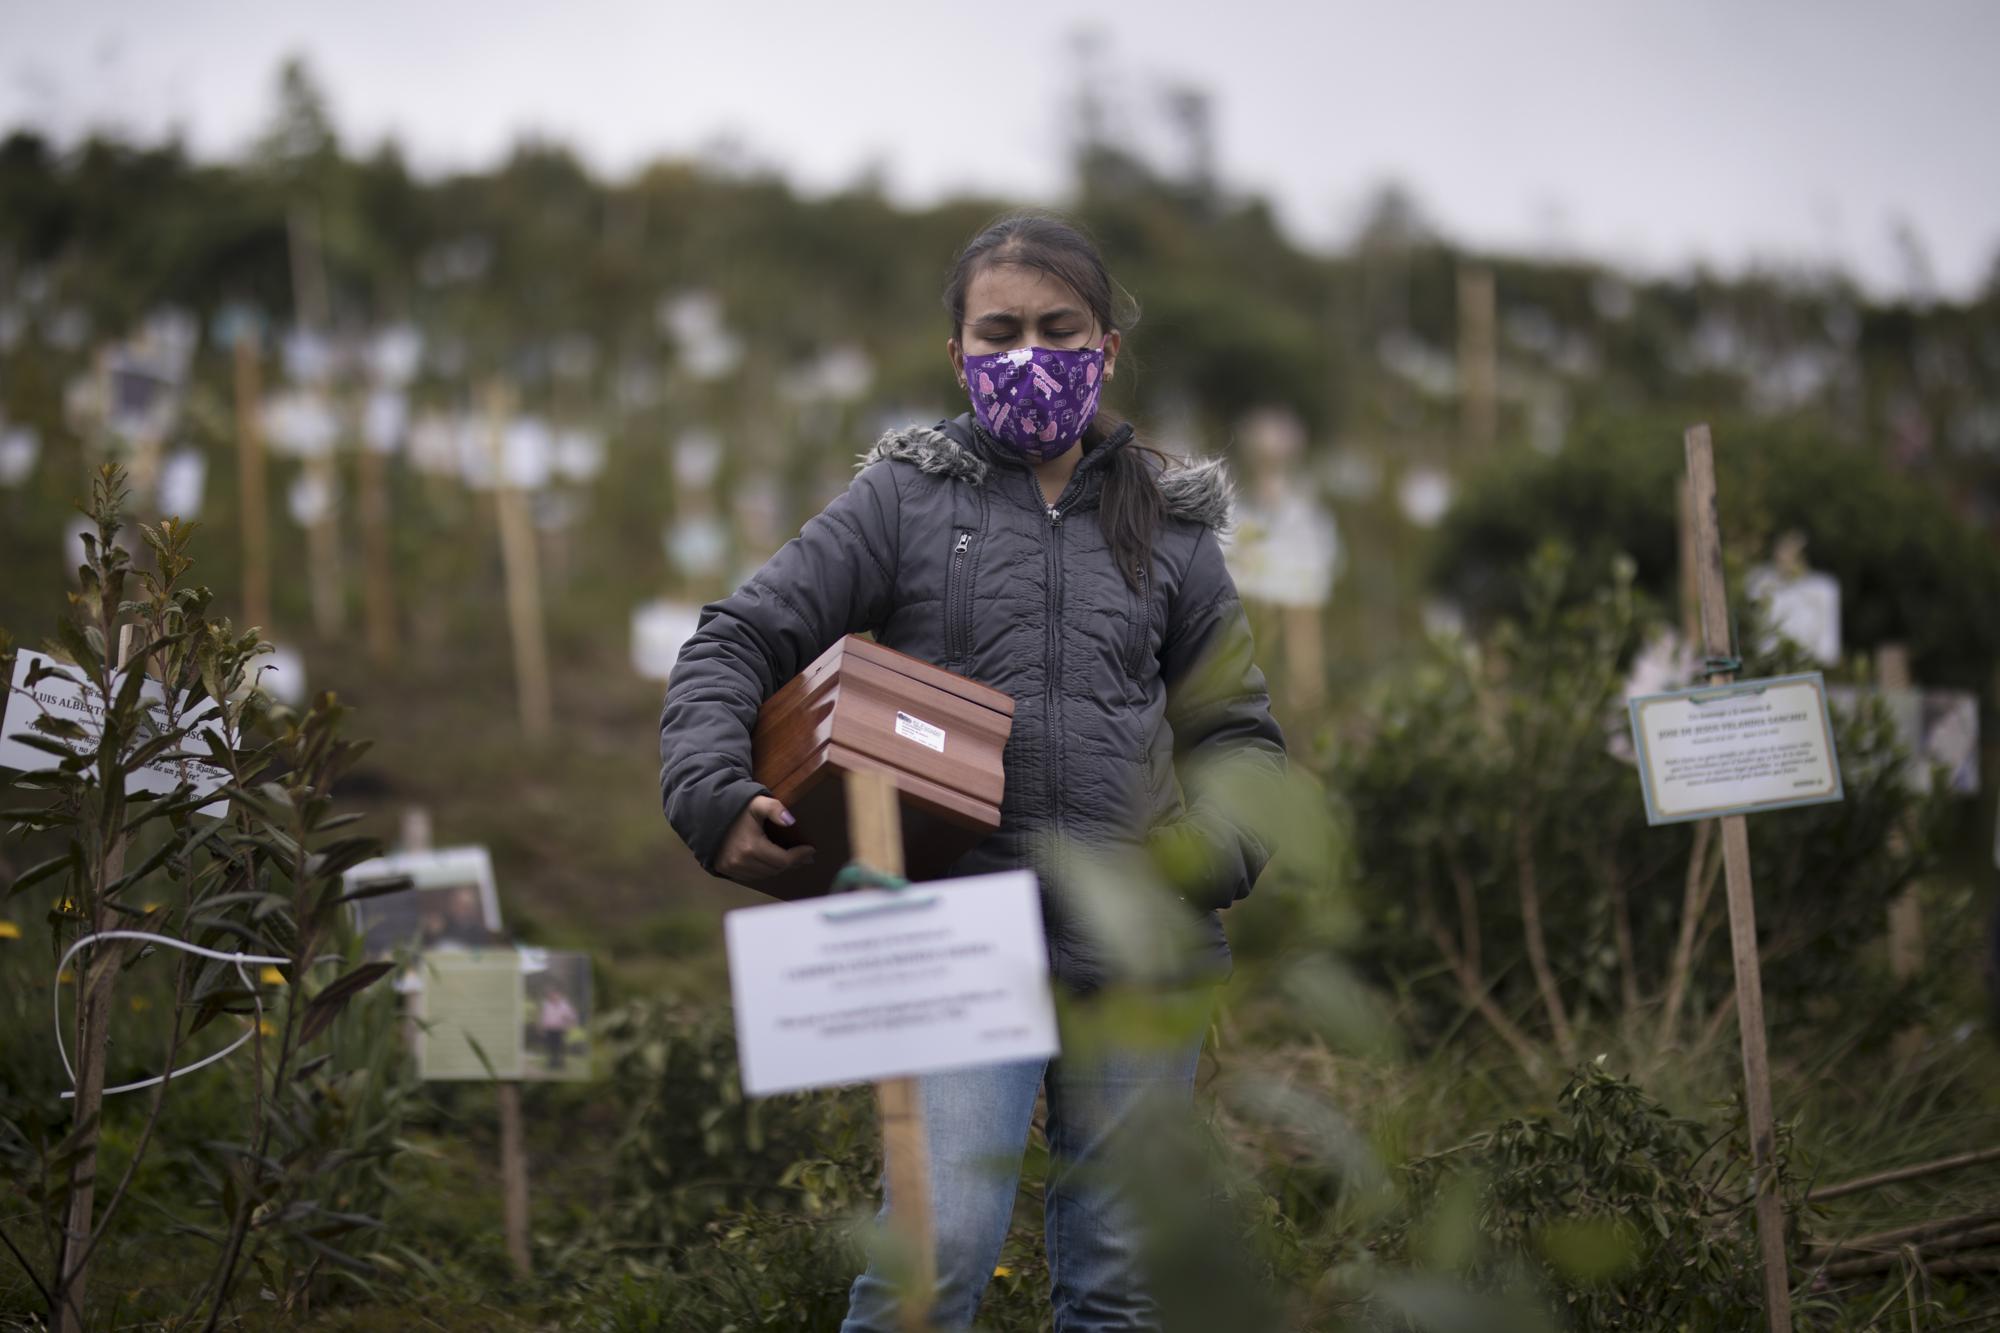 Plantan árboles con cenizas de víctimas de COVID en Colombia | AP News